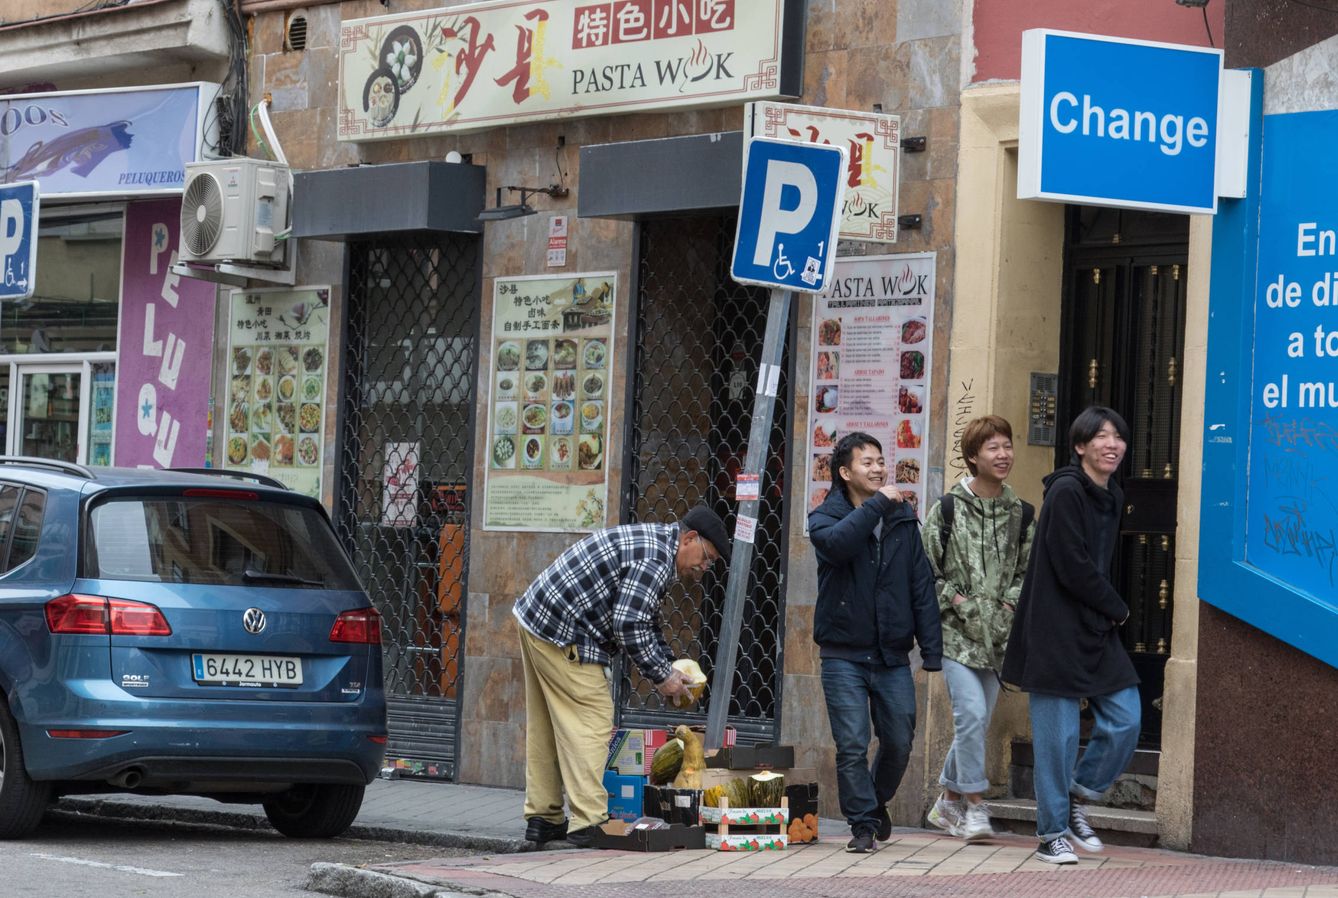 Tres jóvenes pasan de largo por un restaurante cerrado en Usera, Madrid. (D. B.)